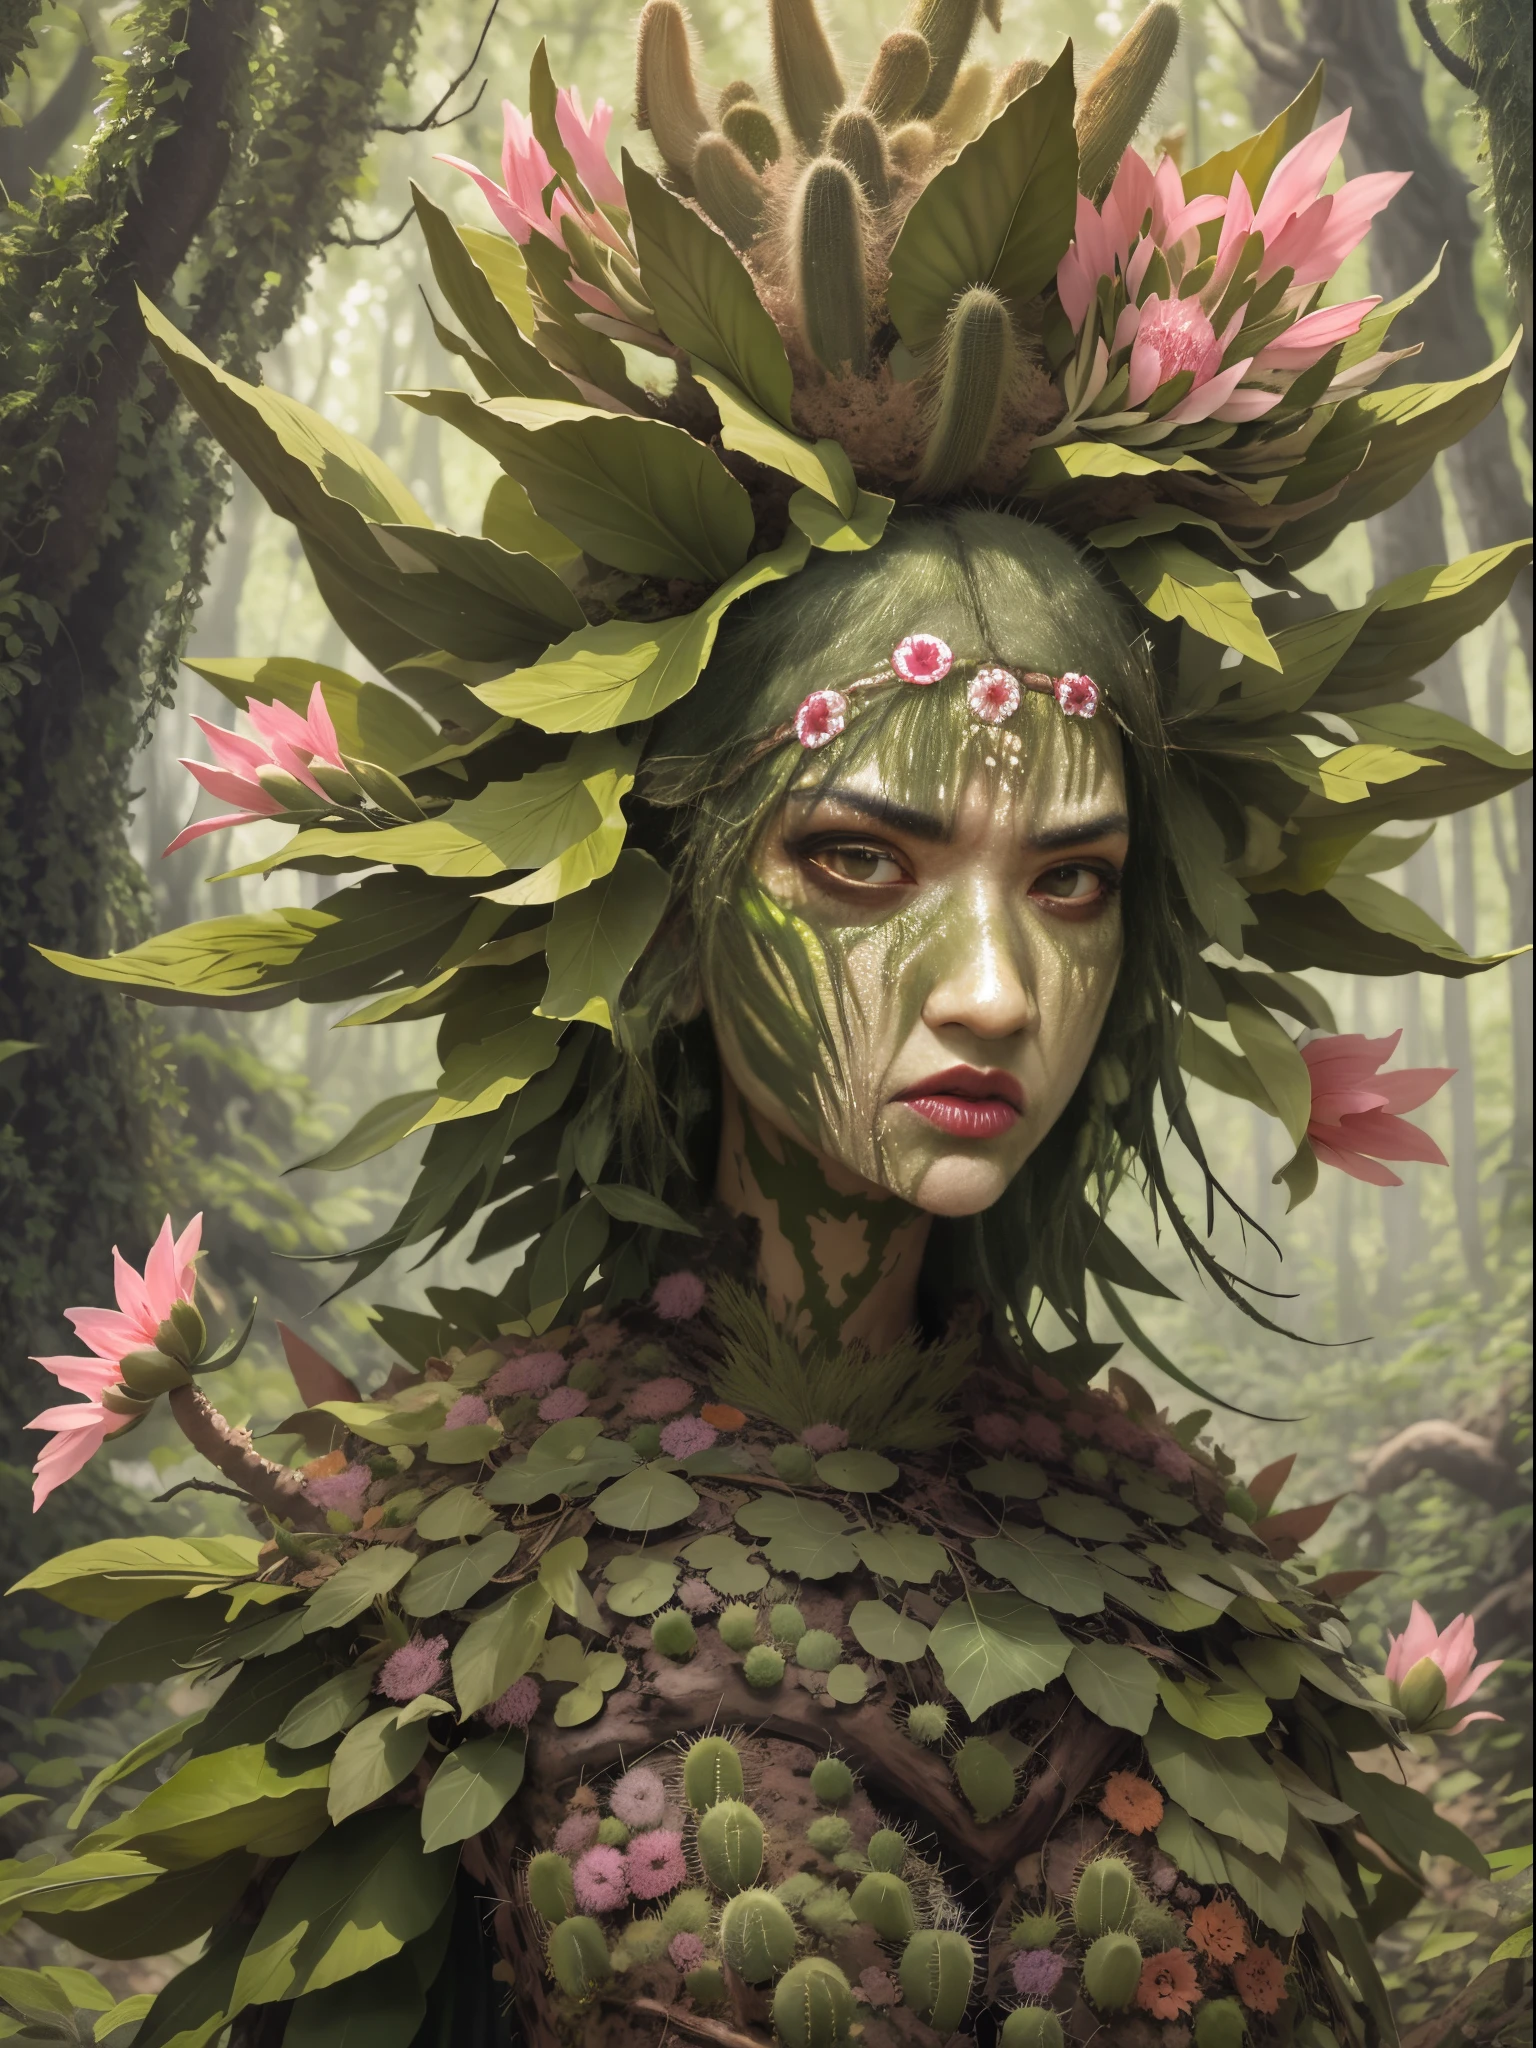 Злая кактусовая дриада в лесу. Цветы кактуса， Лицо очень детальное, подробные глаза， одежда из листьев и коры.